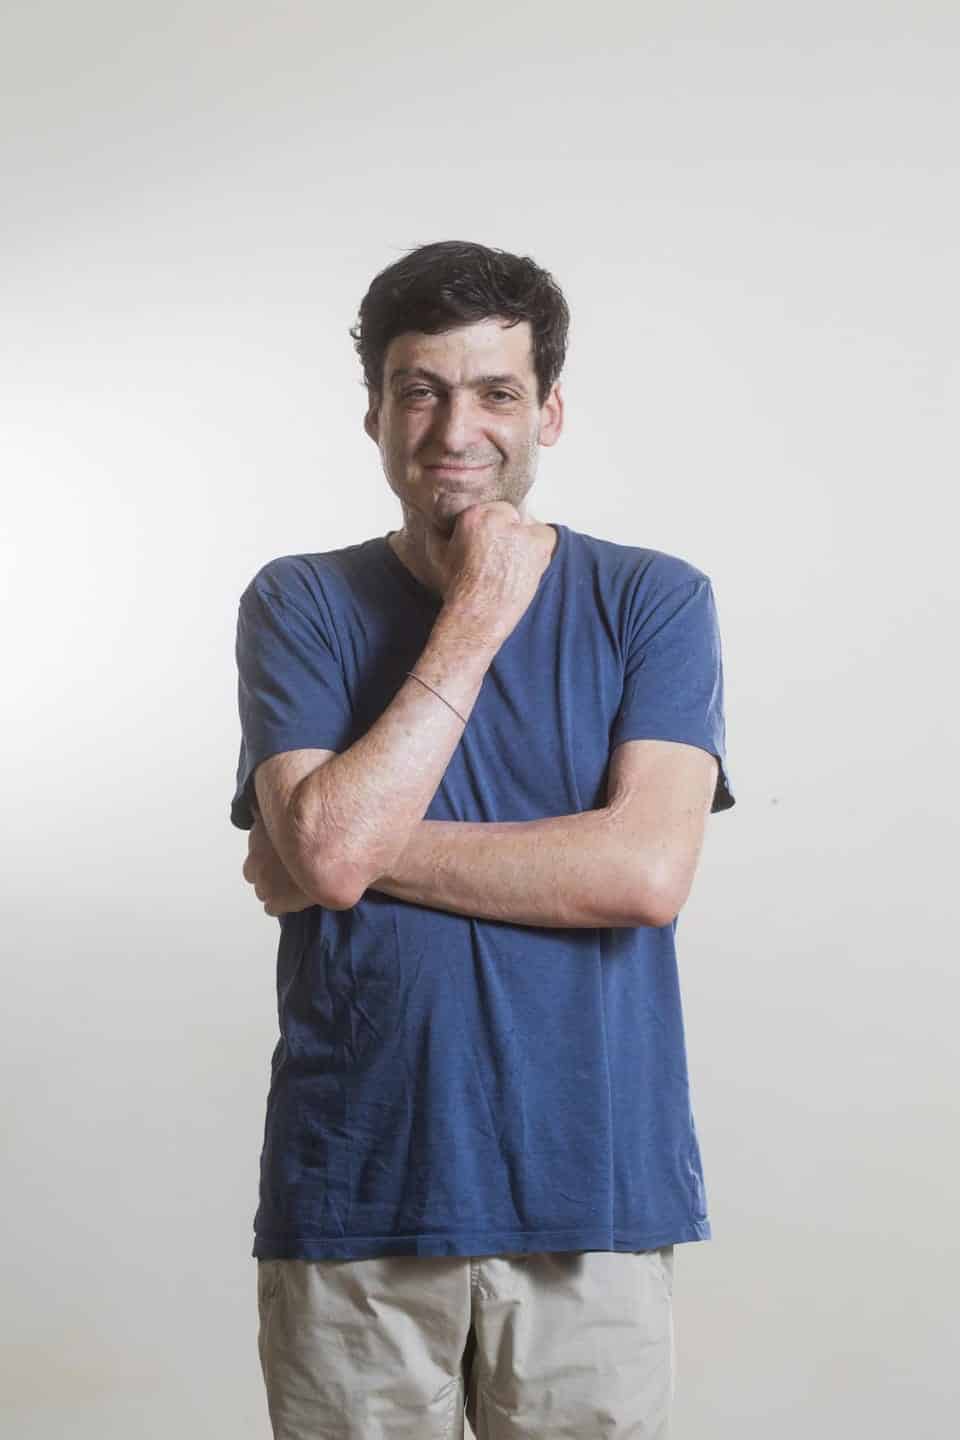 Les facteurs de motivation de Dan Ariely